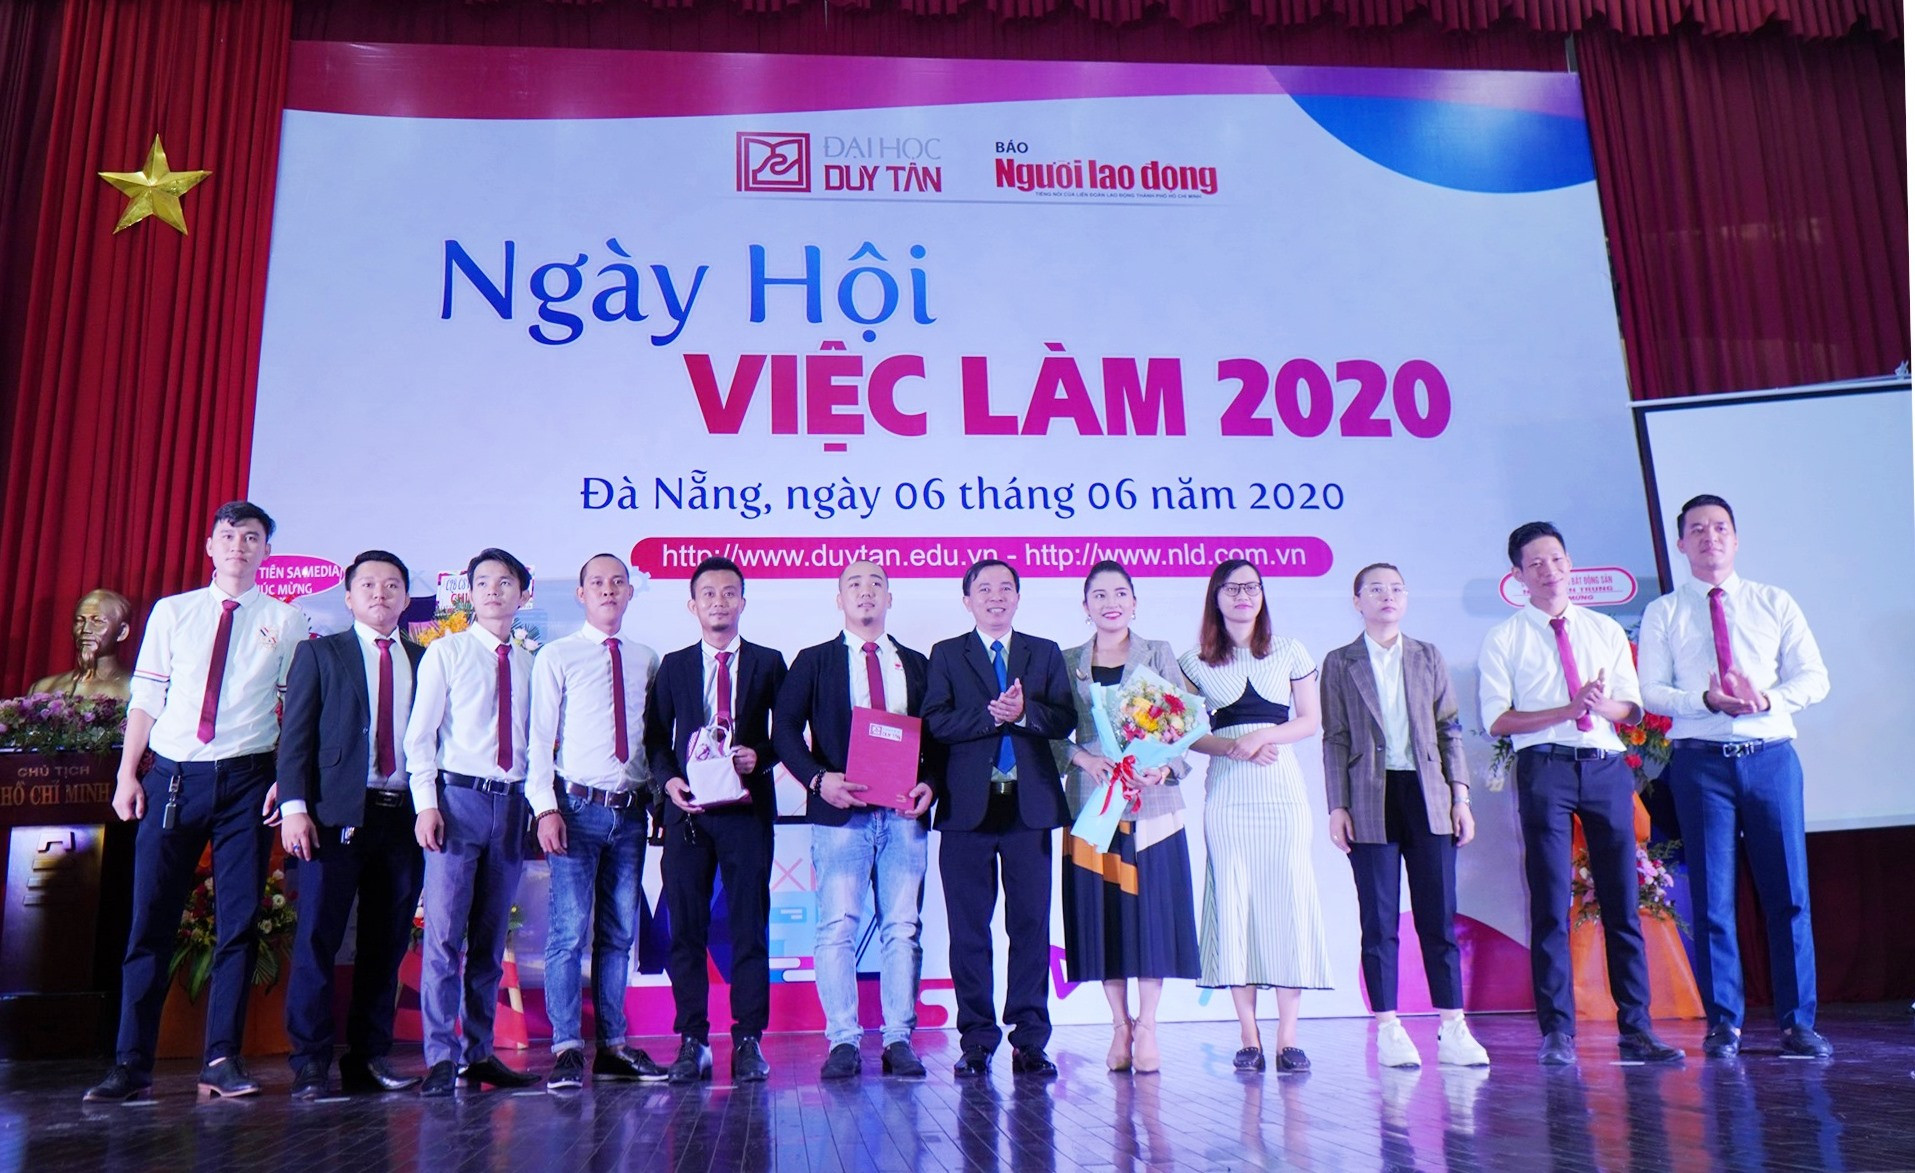 Ra mắt Câu lạc bộ Doanh nhân cựu sinh viên DTU tại NHVL 2020. Ảnh NĐ